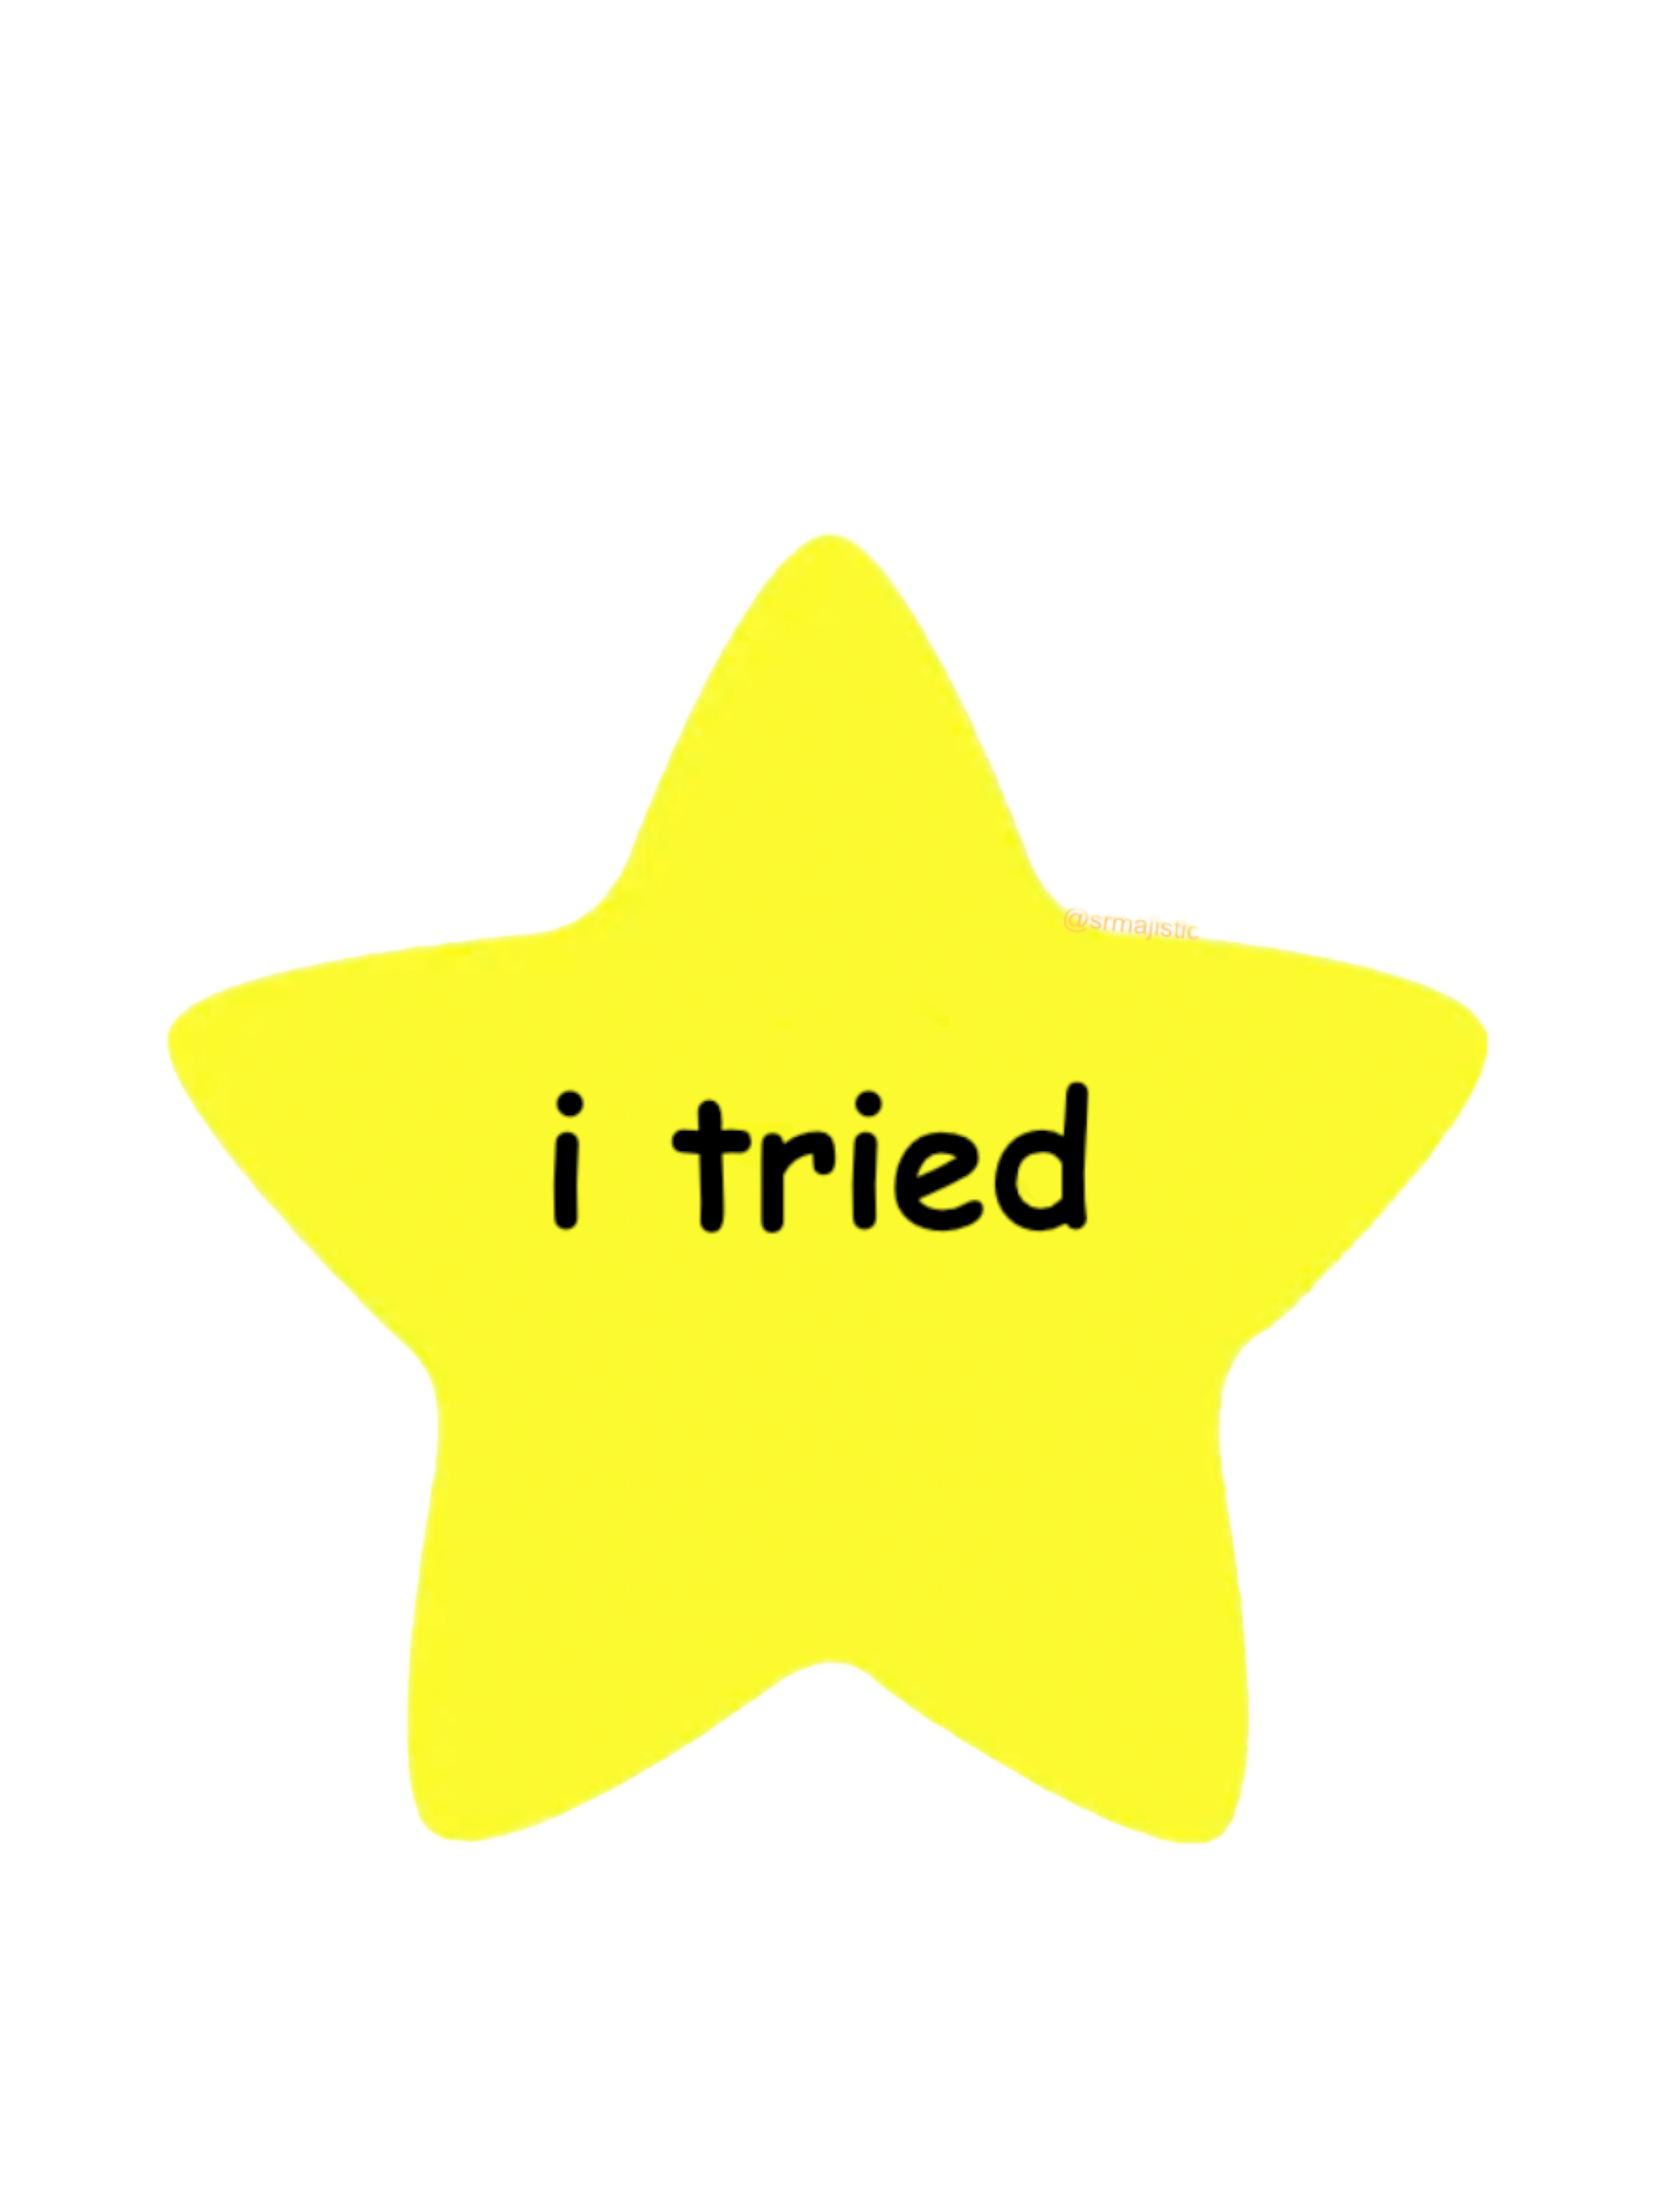 Bumper Sticker of ‘I Tried’ Gold Star Meme